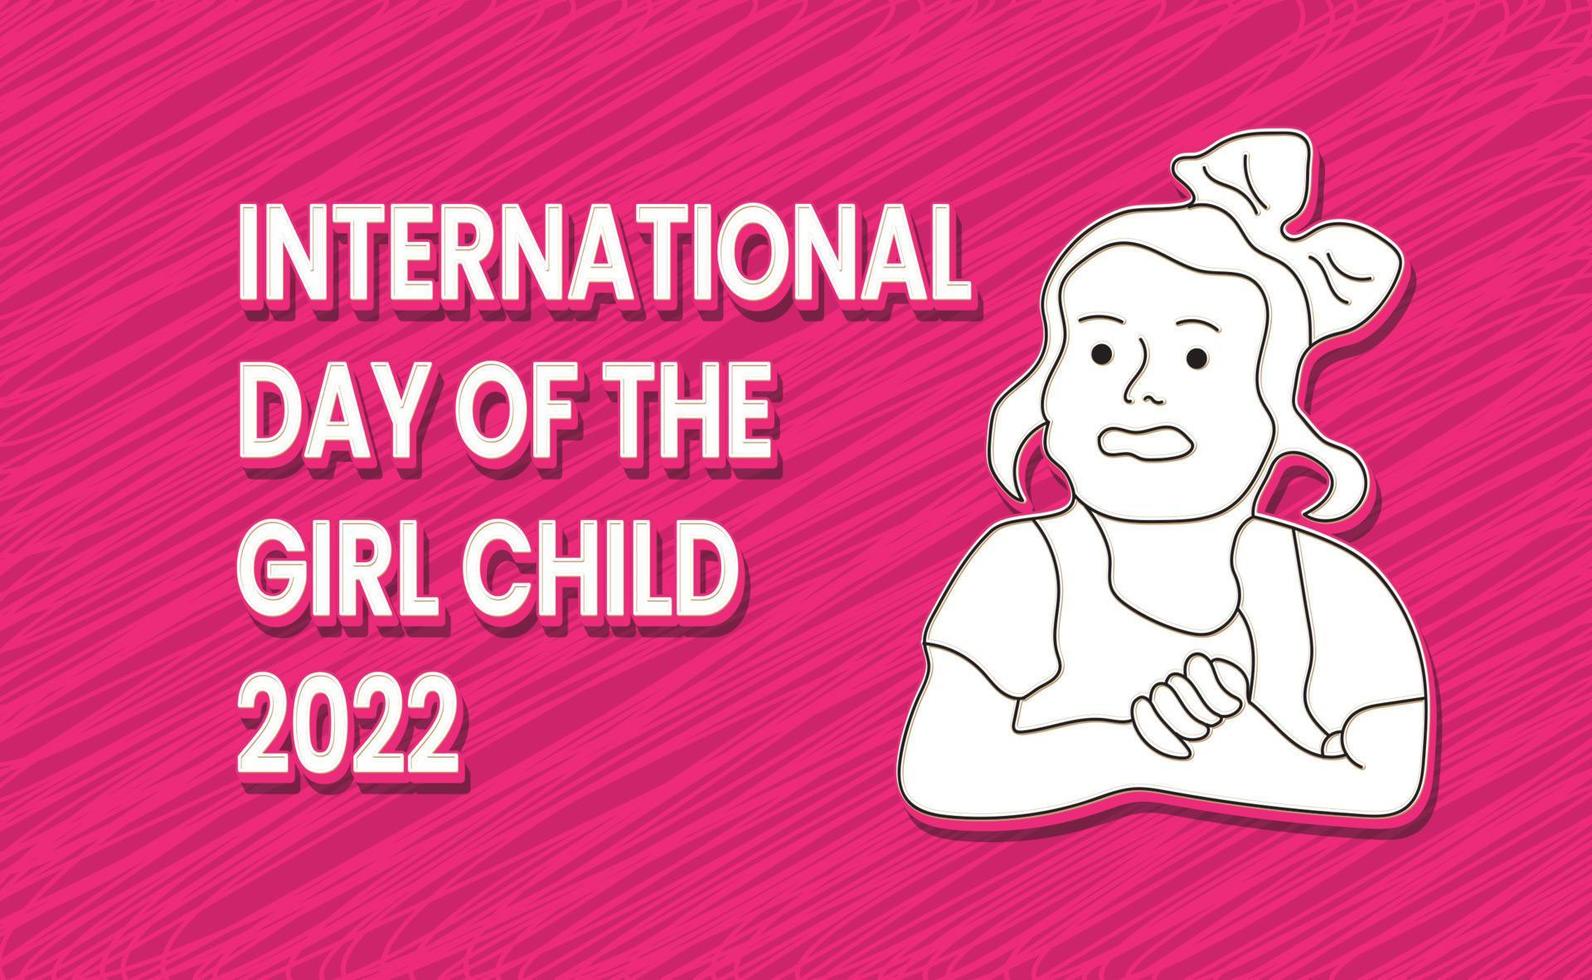 Internationaler Mädchentag - Text, Charaktere und Hintergrund vektor